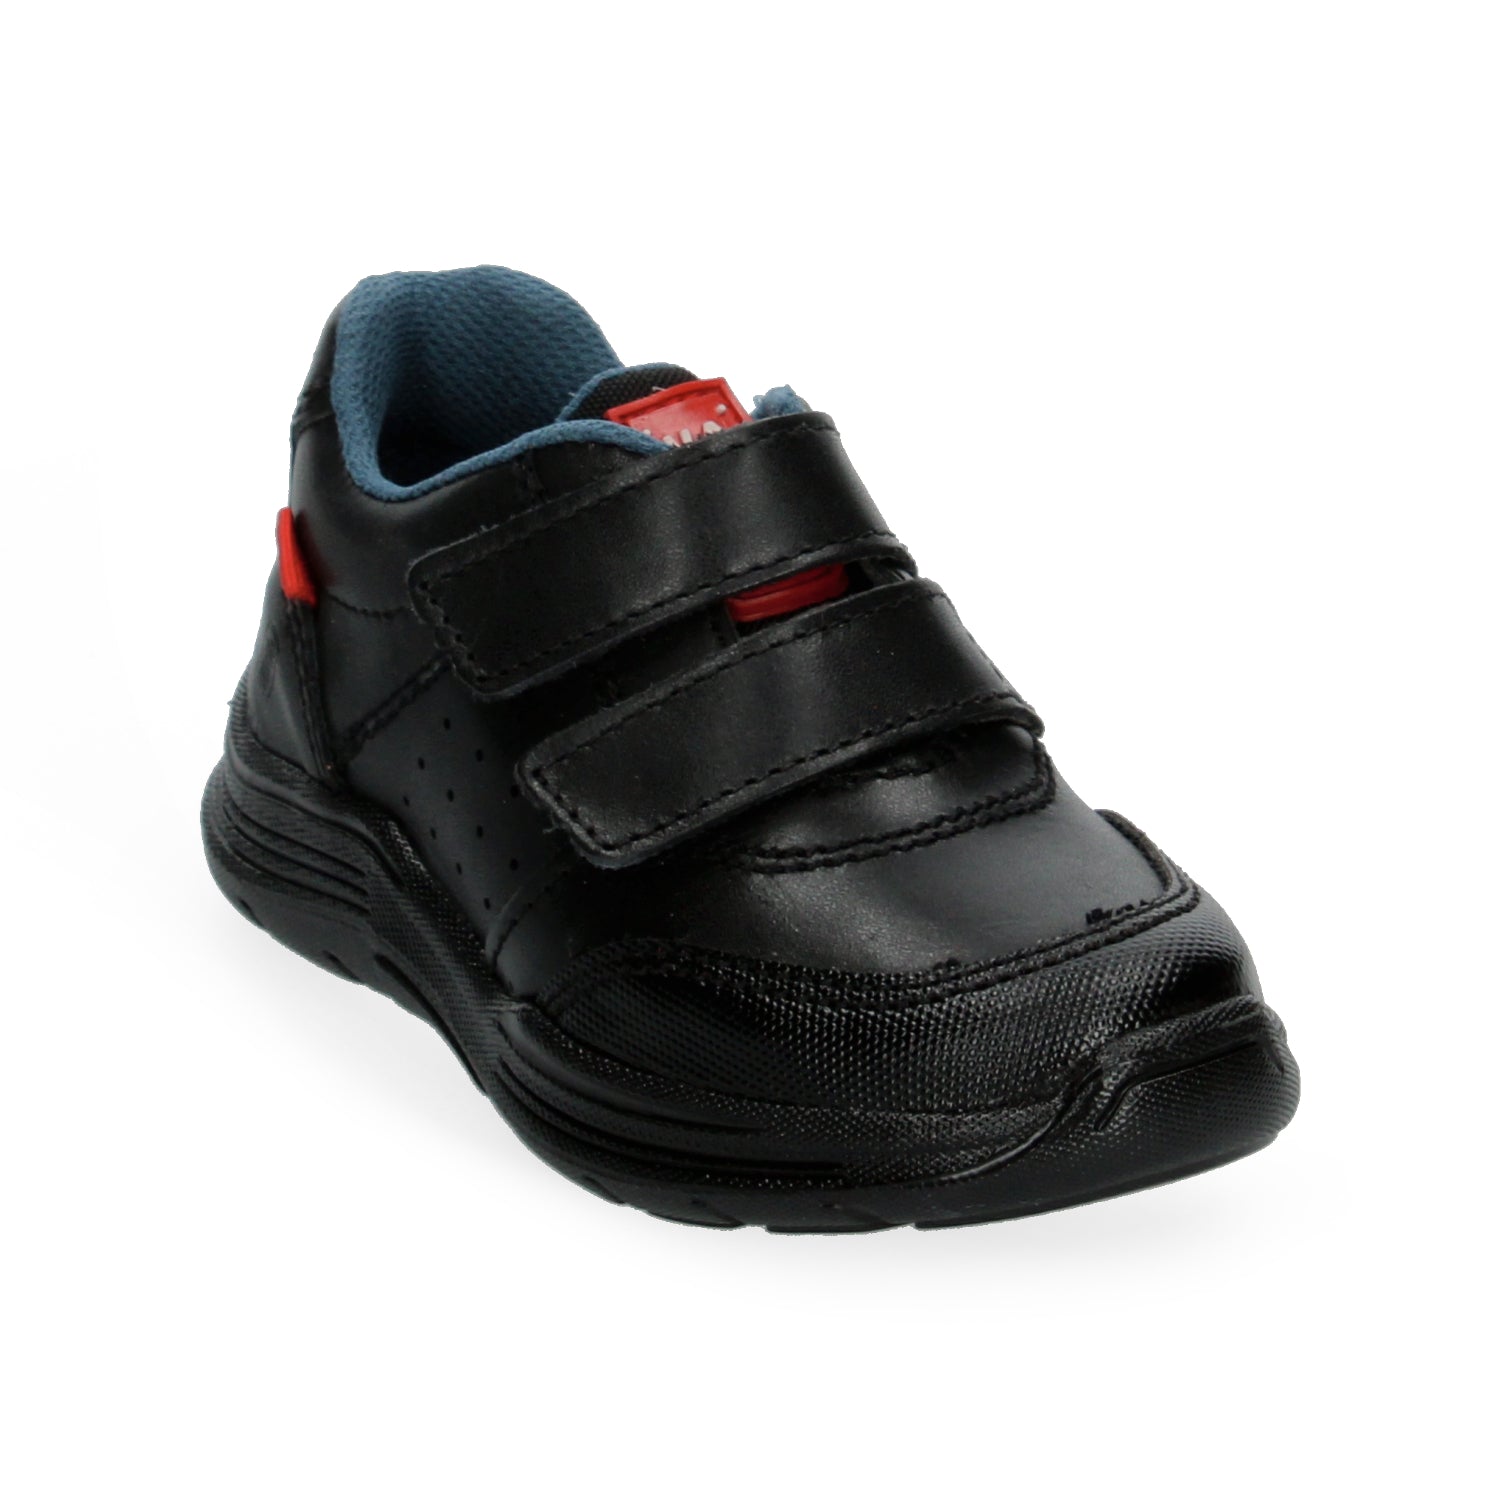 Zapato Escolar Negro Vavito para Niño [VVV1076]